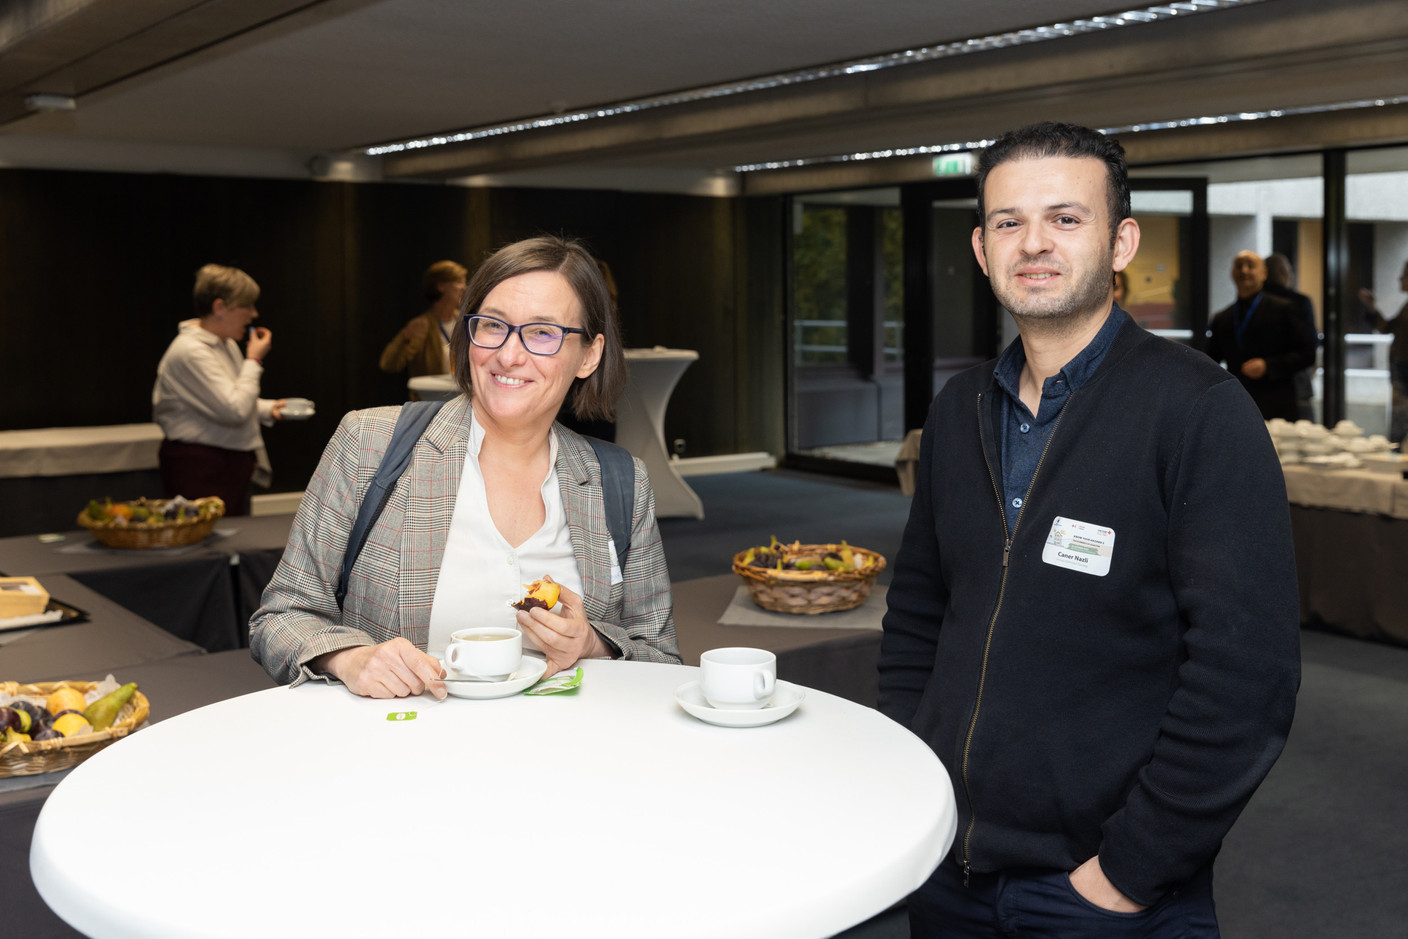 (à droite) Caner Nazli lors de l'événement de réseautage organisé dans le cadre de la conférence sur la préparation des collectivités aux catastrophes, qui s'est tenue au siège de la BEI à Luxembourg le 26 octobre 2023. (Photo: Romain Gamba/Maison Moderne)